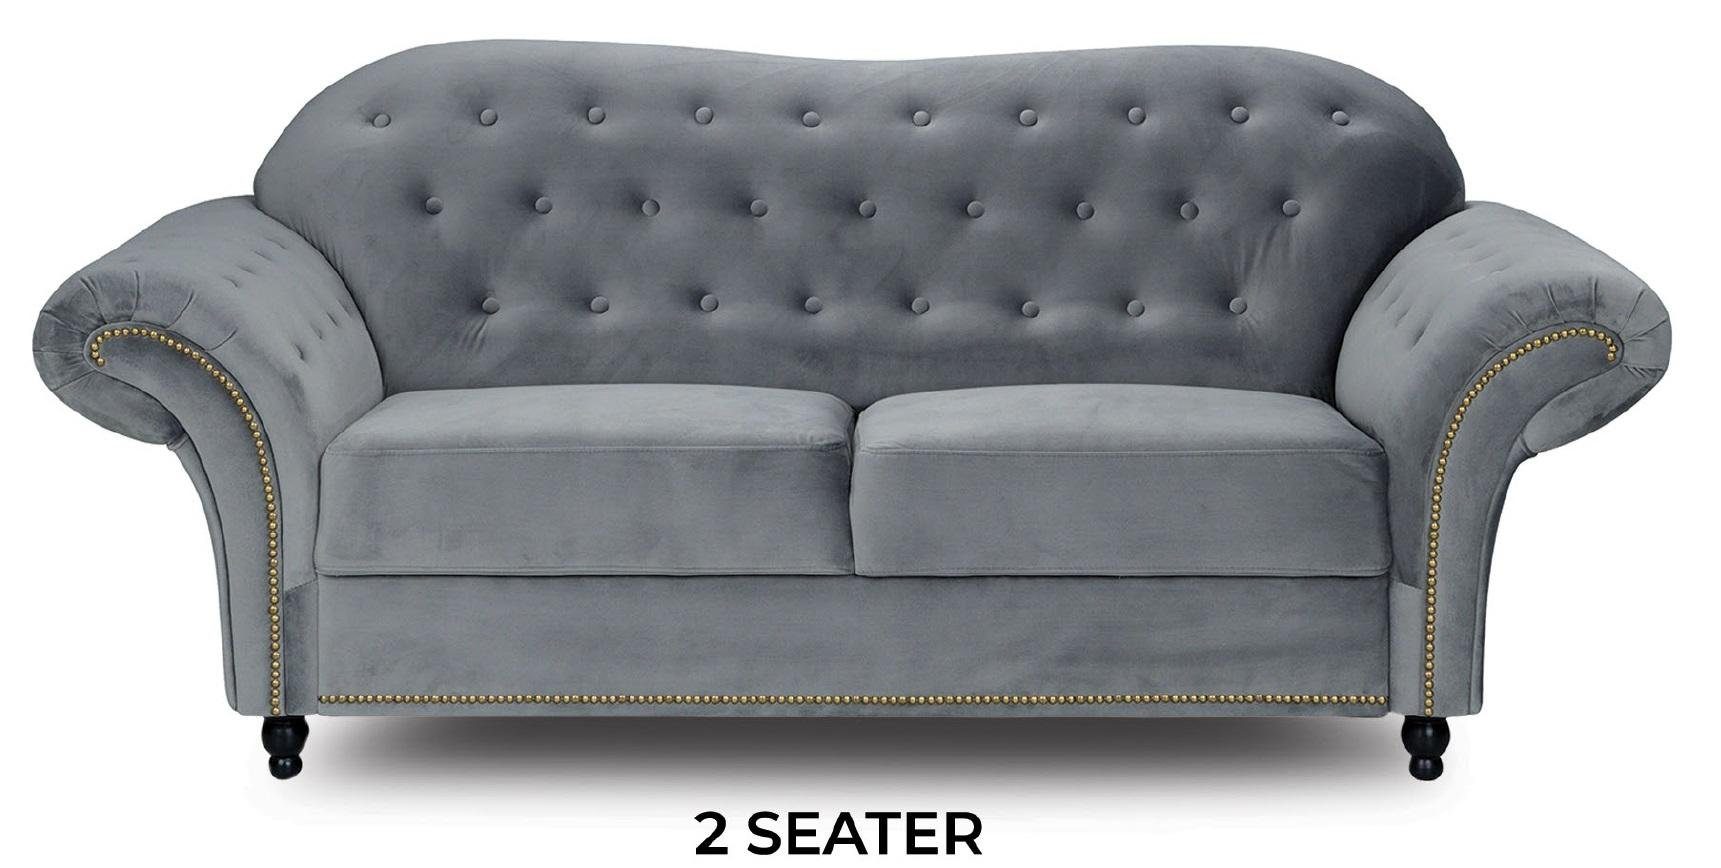 JVmoebel in Zweisitzer Chesterfield Design Polstermöbel Luxus Europe Made Grauer Neu, Sofa